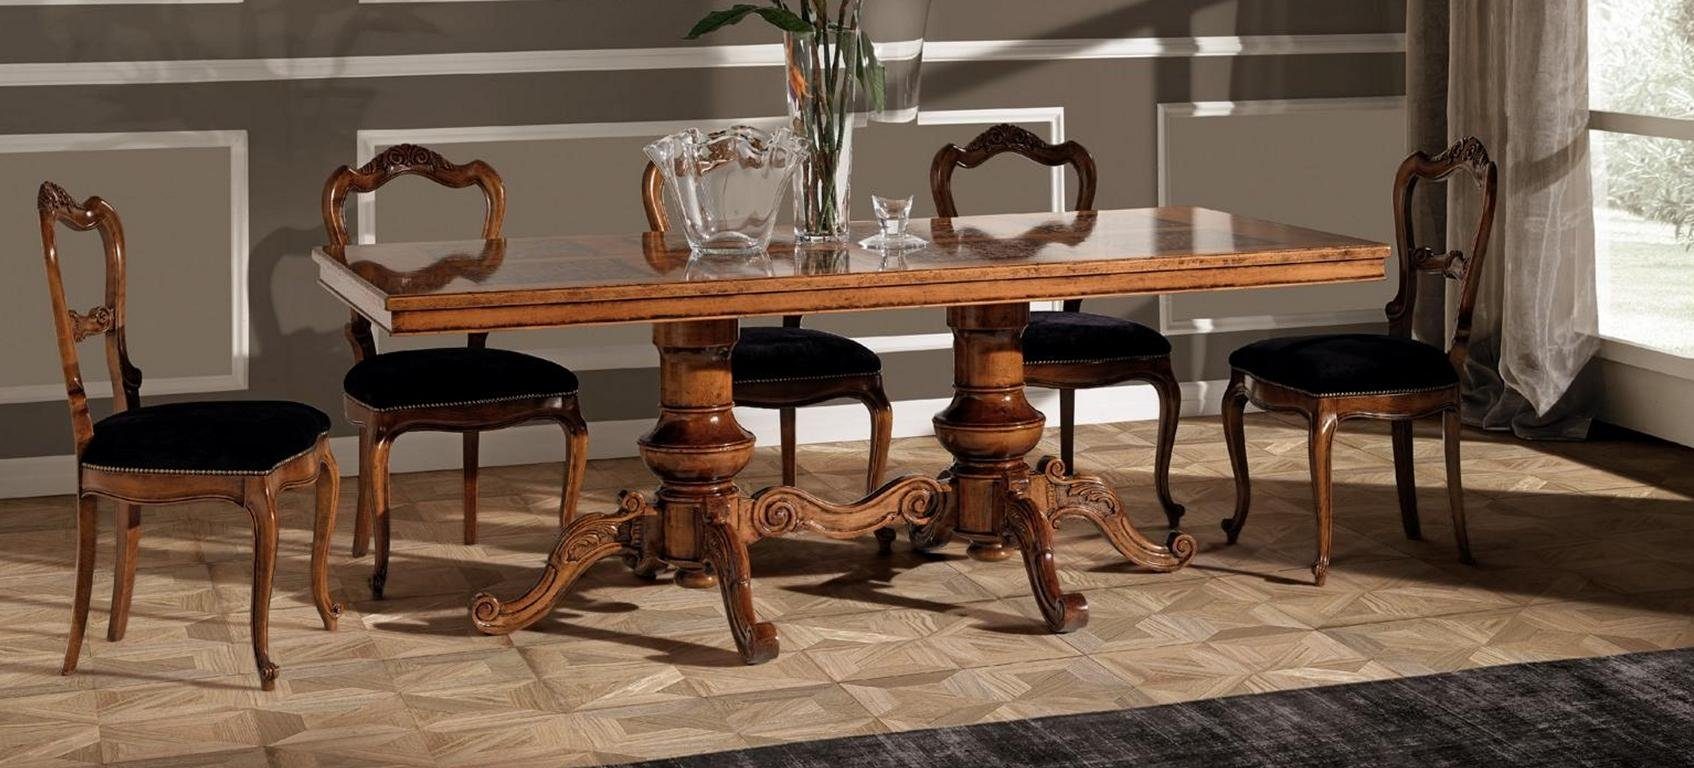 JVmoebel Esstisch, Luxus Esstisch Tisch Massiv Holz Möbel Italien Esszimmer Tische